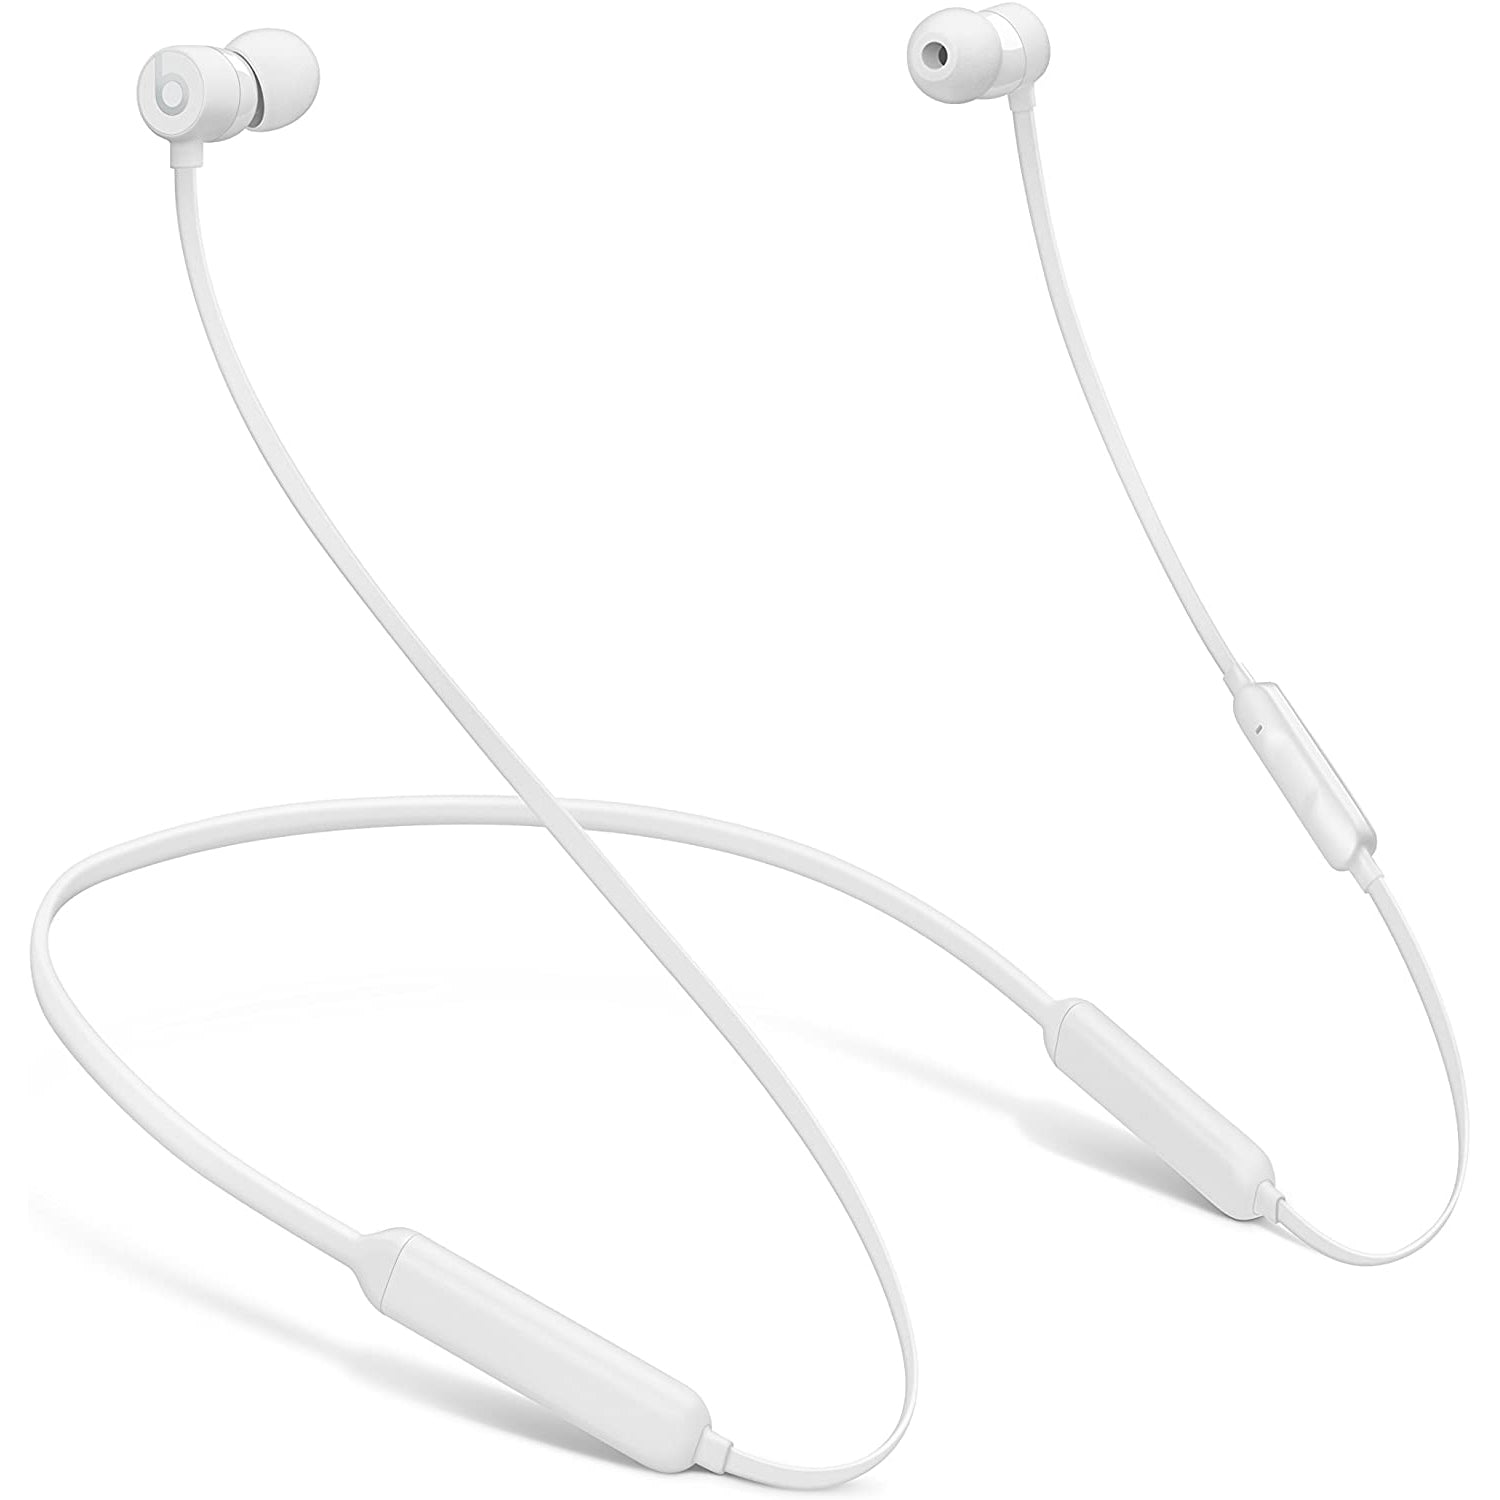 BeatsX Wireless Bluetooth In-Ear Headphones, Black/White